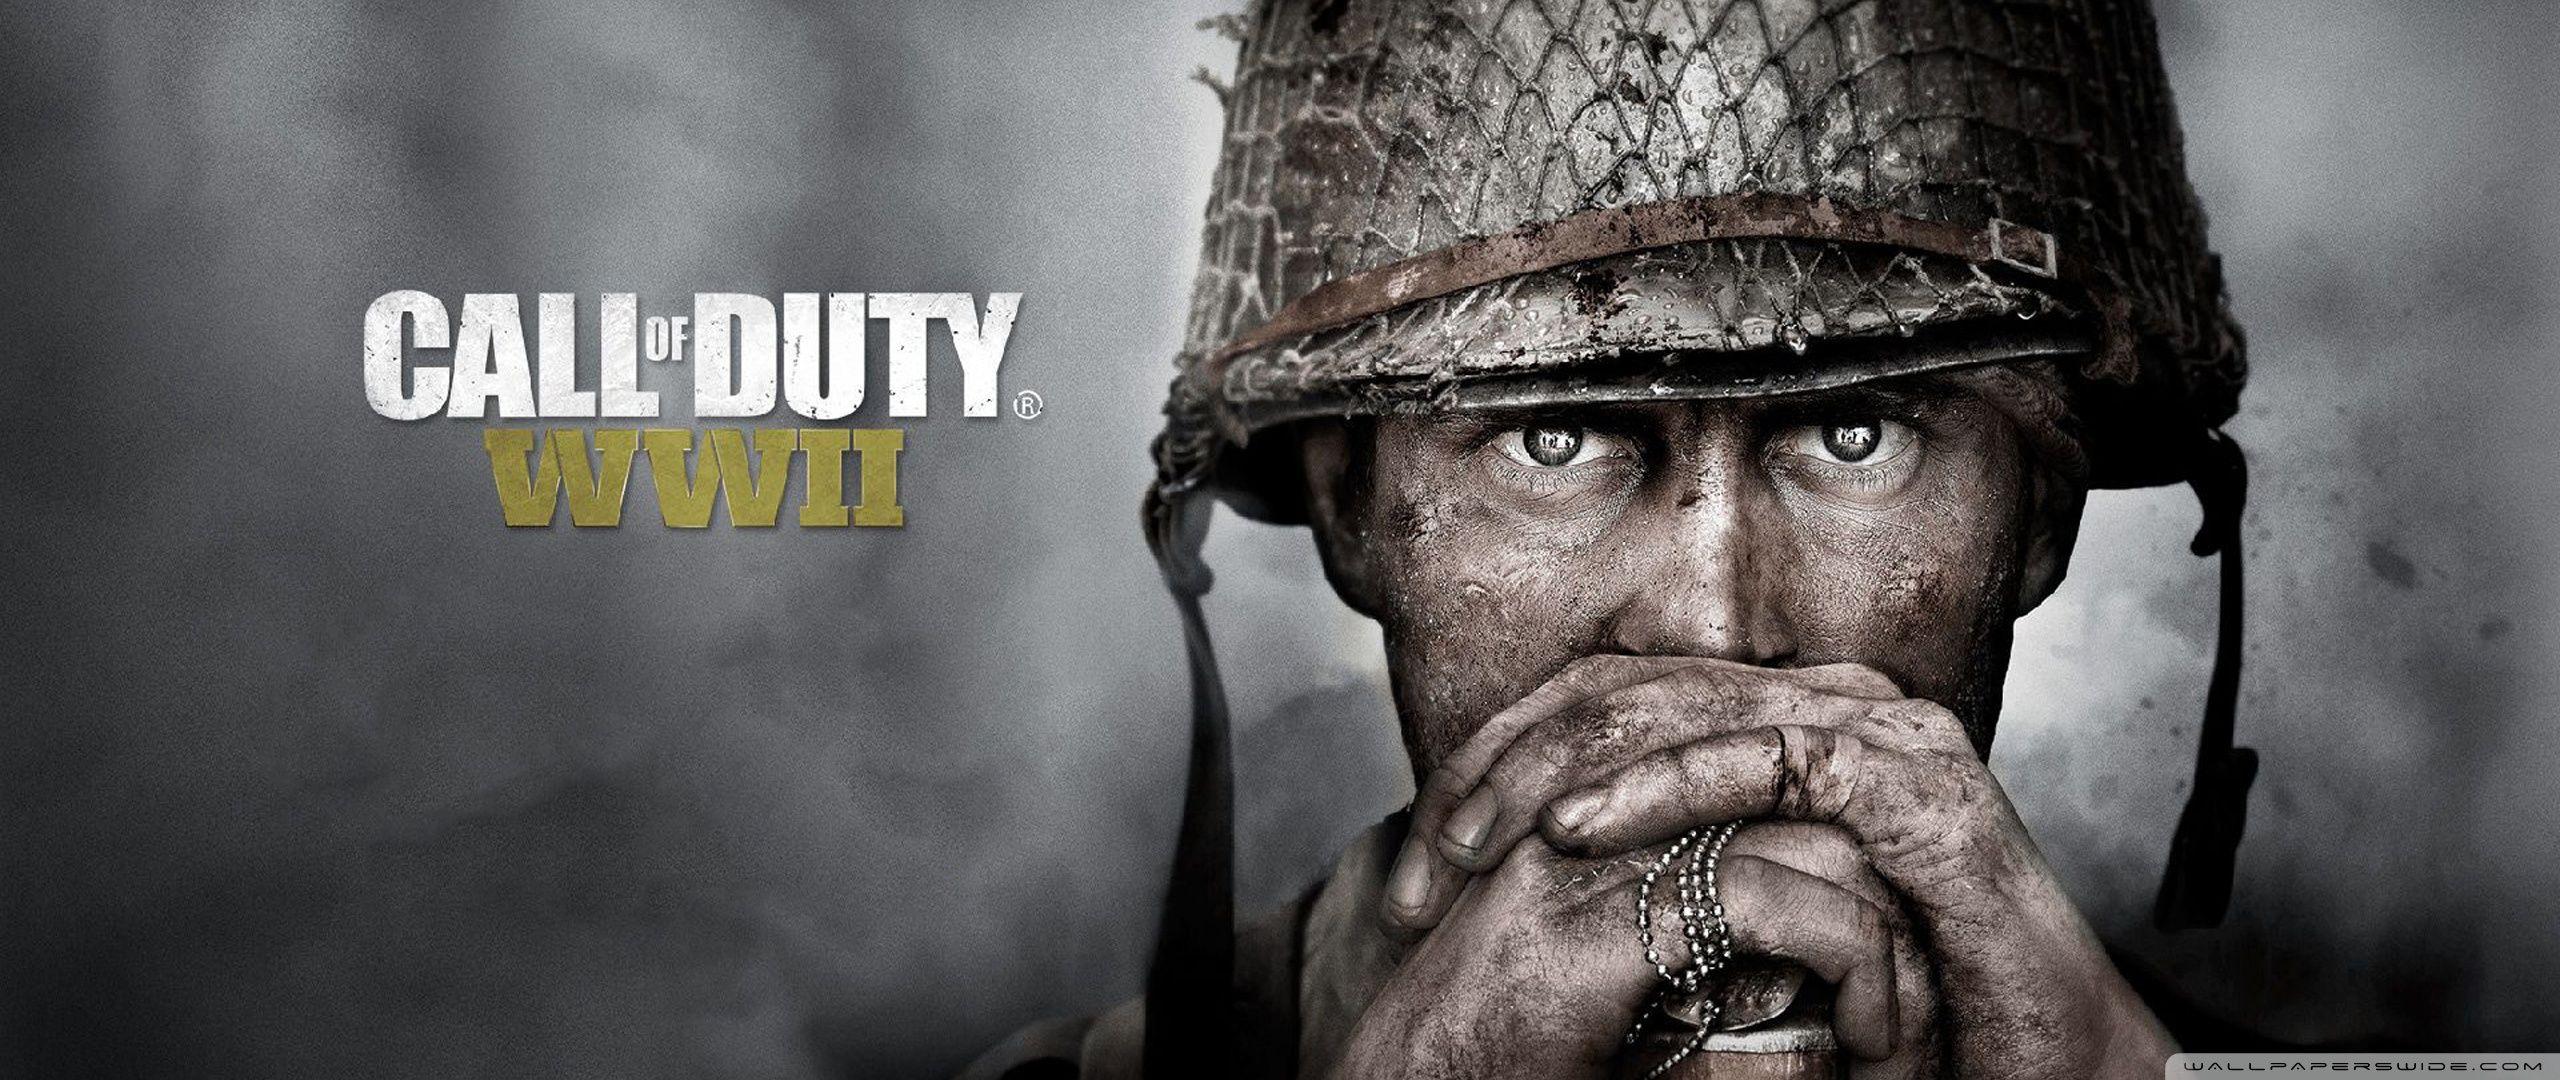 Call of Duty WW2 ❤ UHD desktop wallpaper for Ultra HD 4K 8K